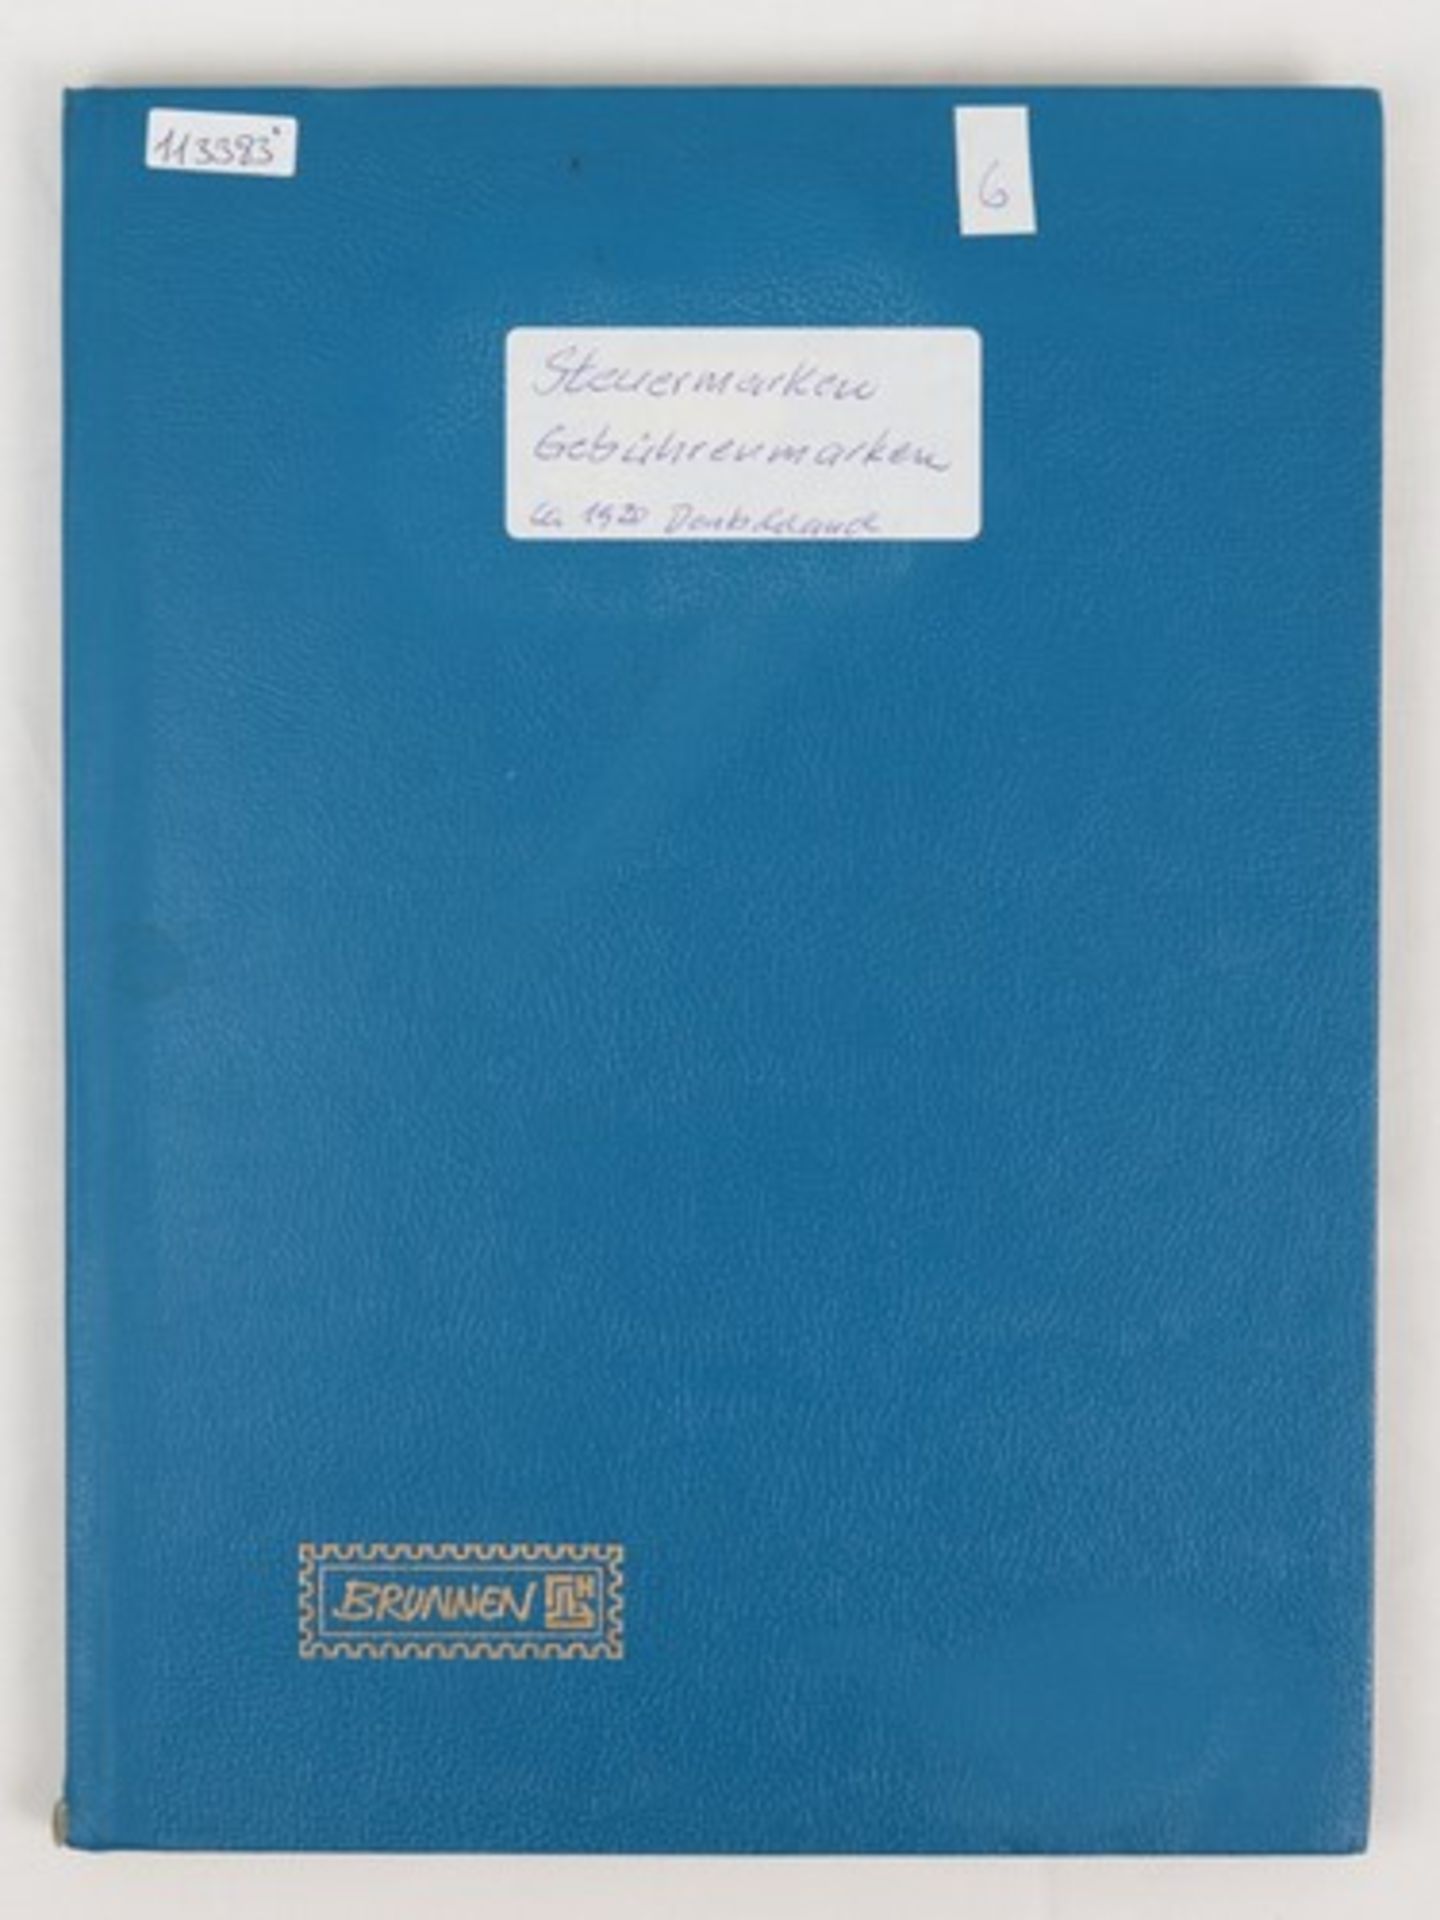 Album - Dt.Reichum 1920, Steckalbum, Steuer und Gebührenmarken, darunter Einkommensteuer, u.a.